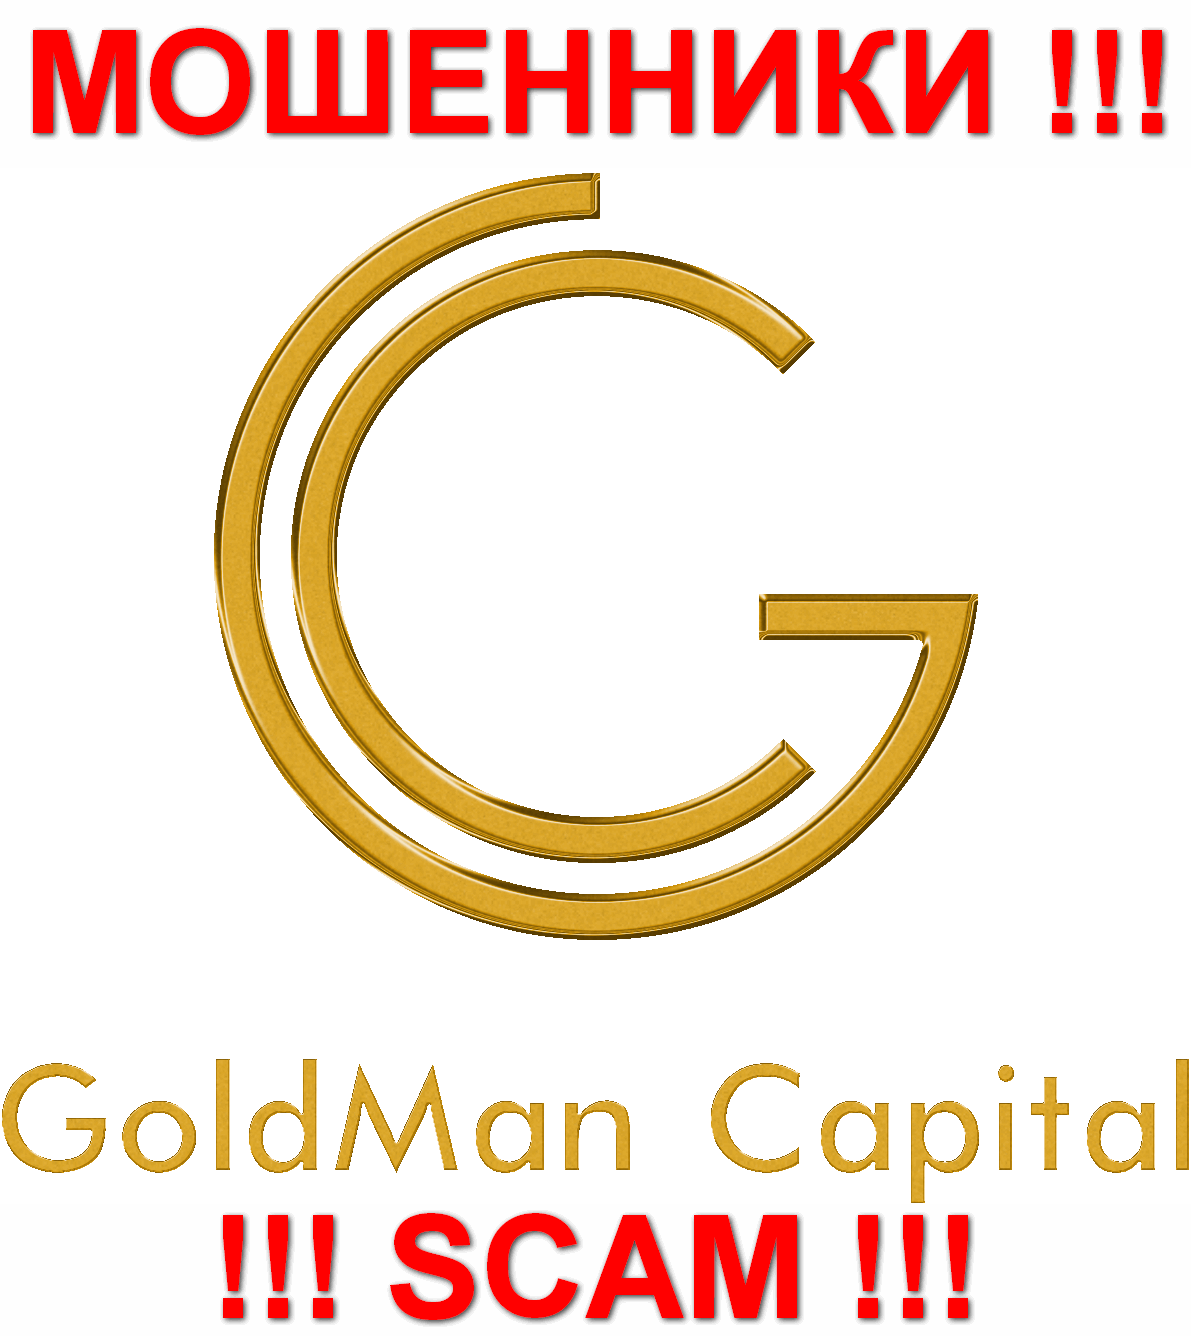 GoldMan Capital - МОШЕННИКИ !!! SCAM !!!